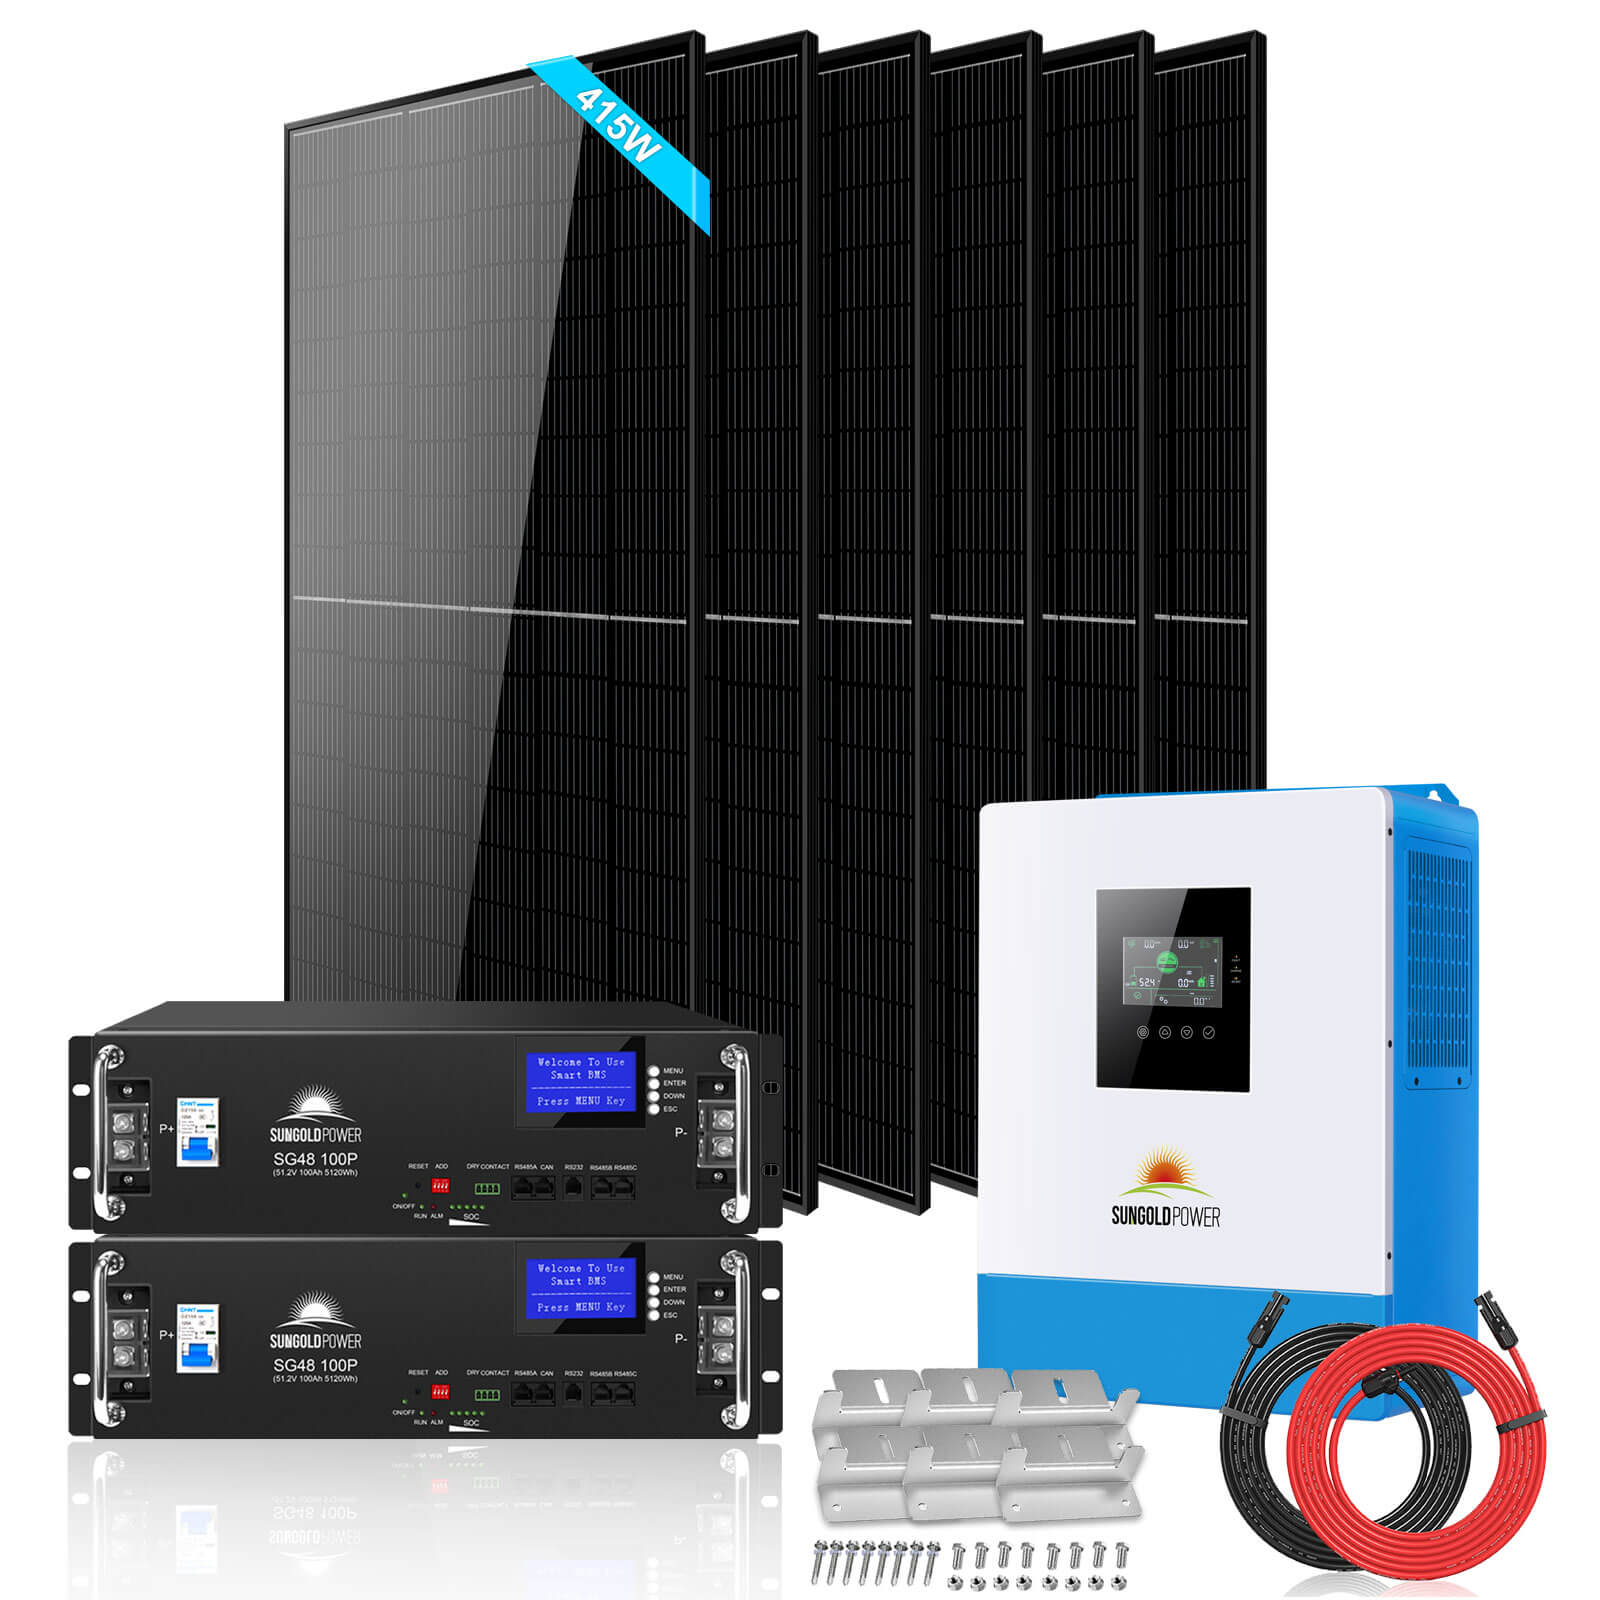 Kit solar 5000w Off Grid generación fotovoltaica sistema aislado